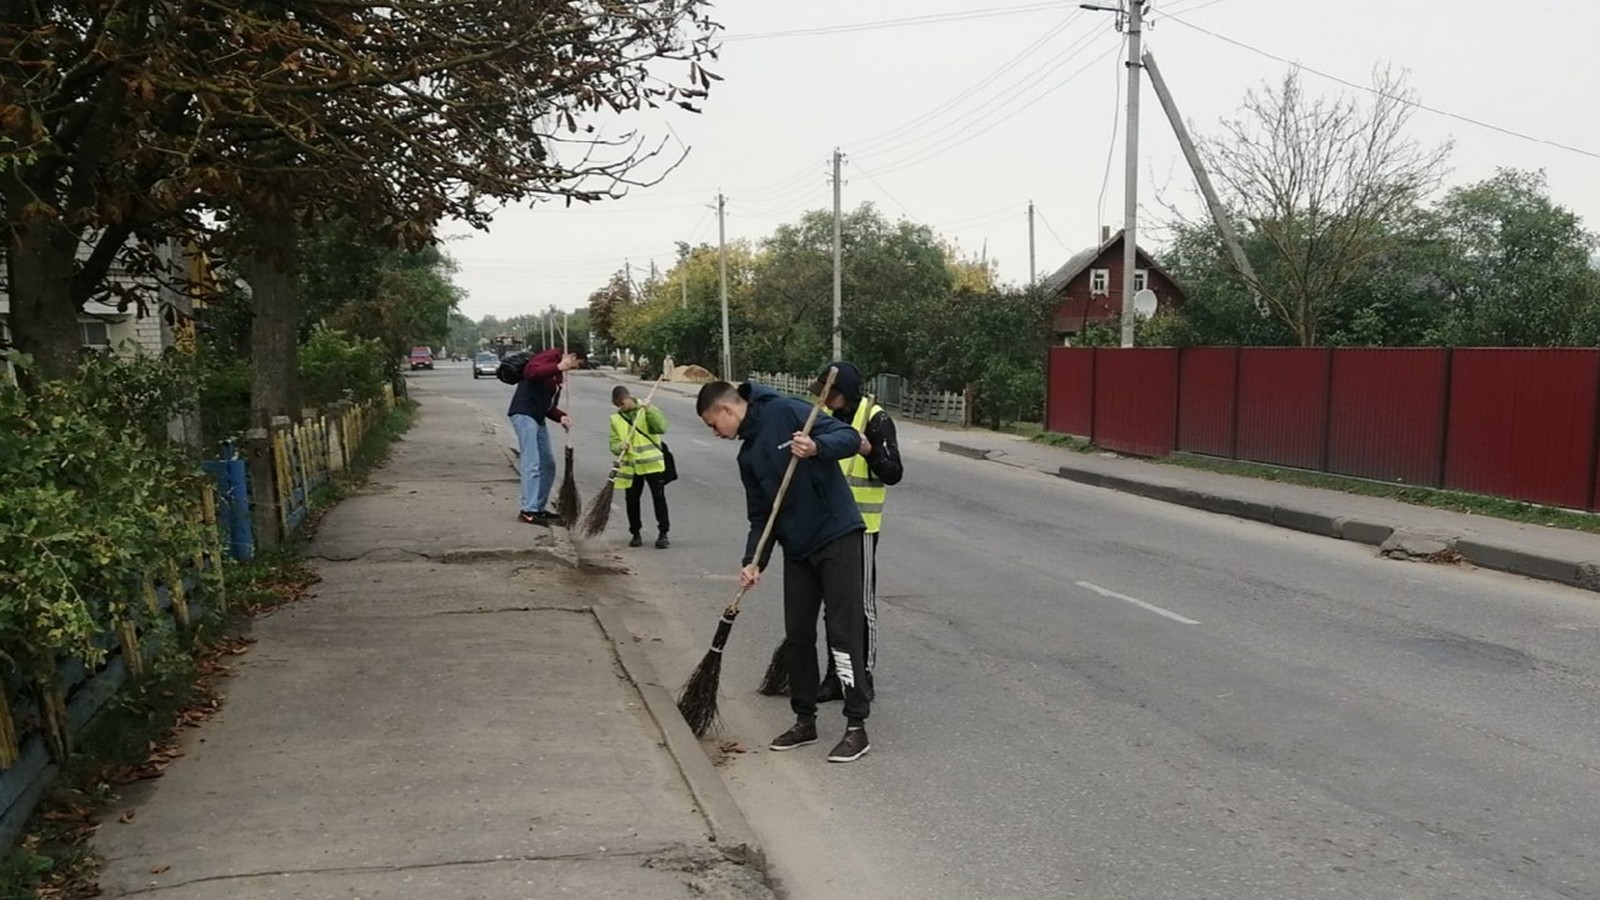 За учреждением образования закреплена для уборки ул. 17 Сентября.
1 октября члены ПО ОО «БРСМ» из числа учебной группы  №226 осуществляли уборку данной территории.